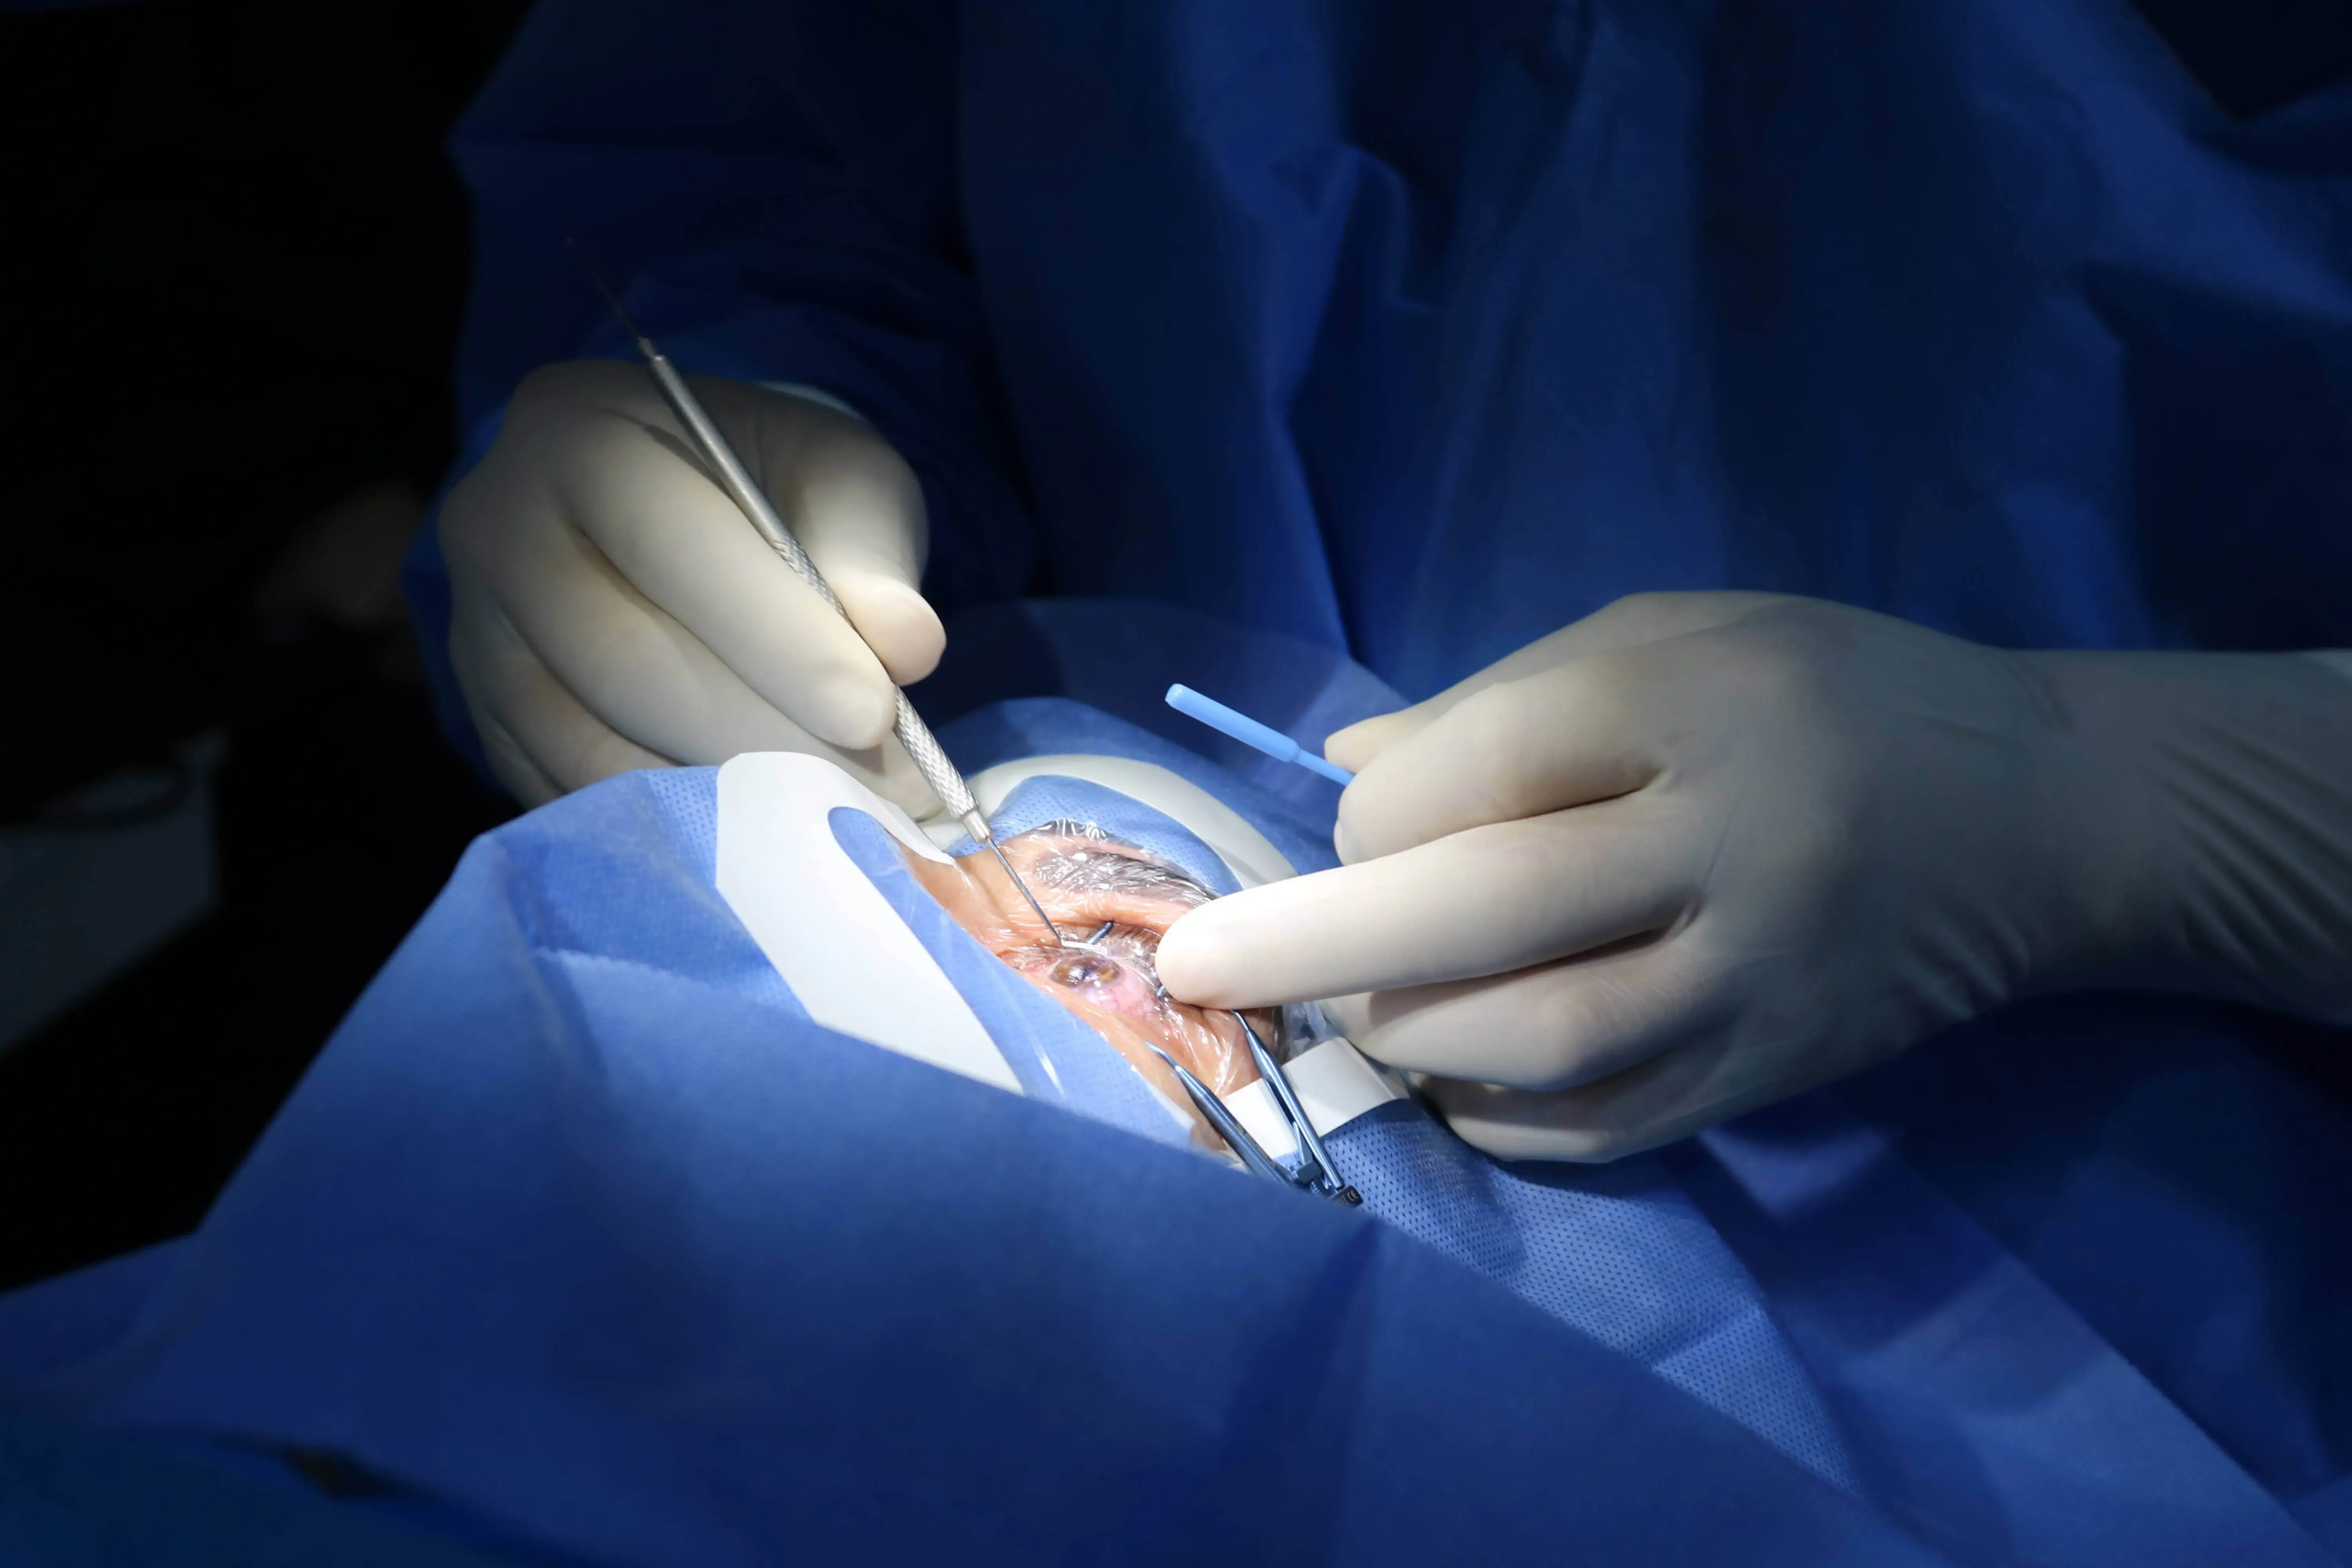 trasplante-de-cornea-medico-realizando-cirugia-de-trasplante-de-cornea-oftalmosalud